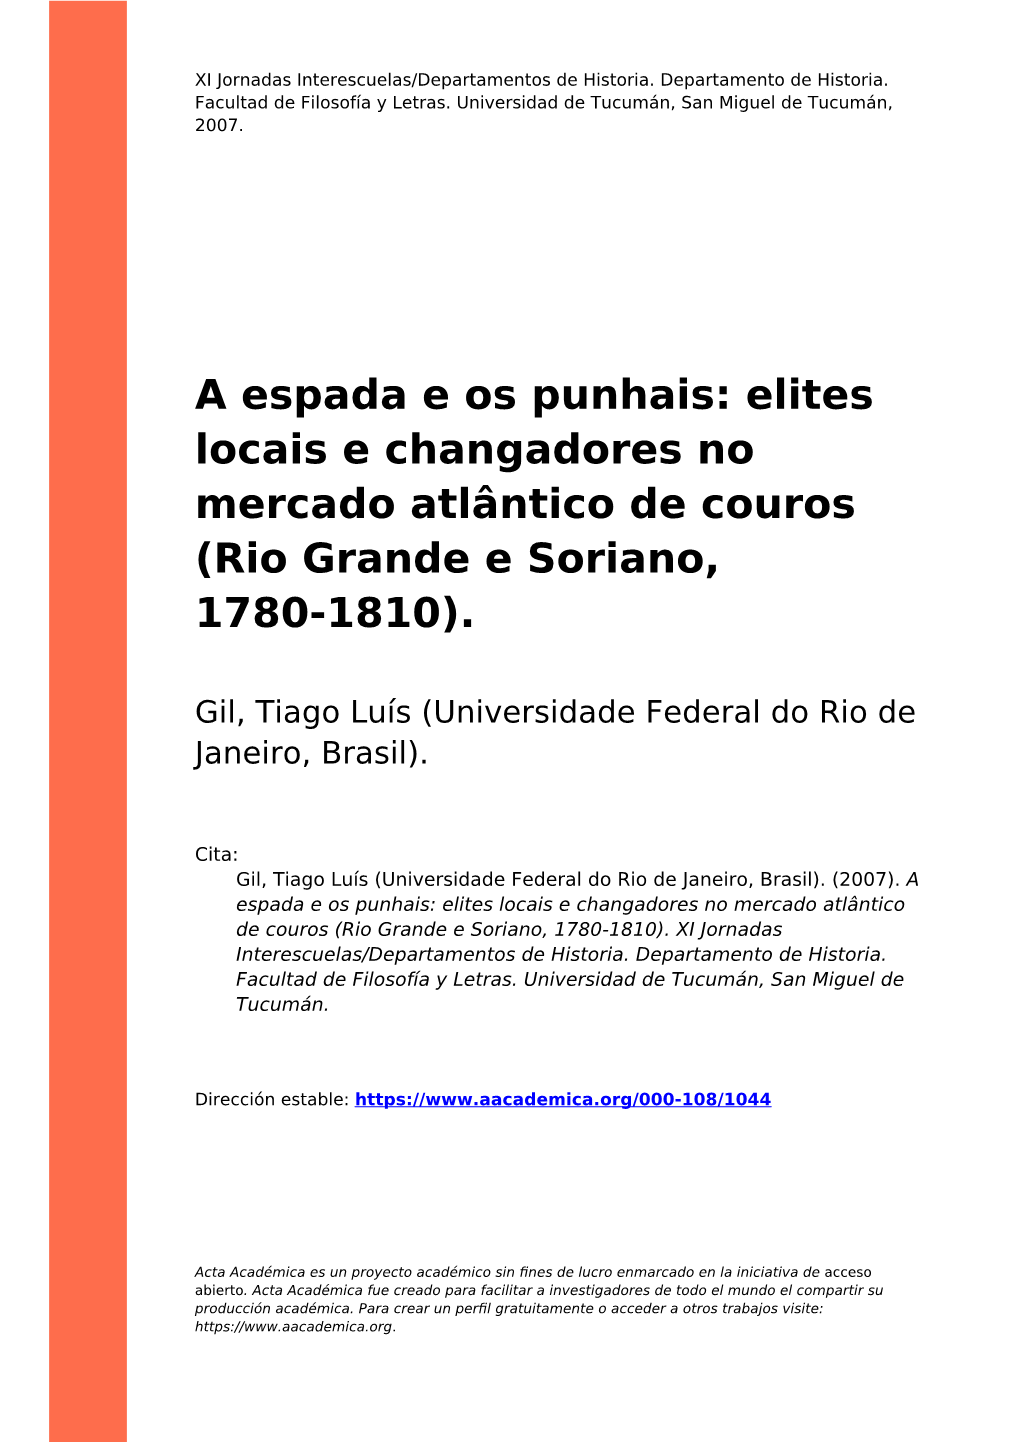 Elites Locais E Changadores No Mercado Atlântico De Couros (Rio Grande E Soriano, 1780-1810)